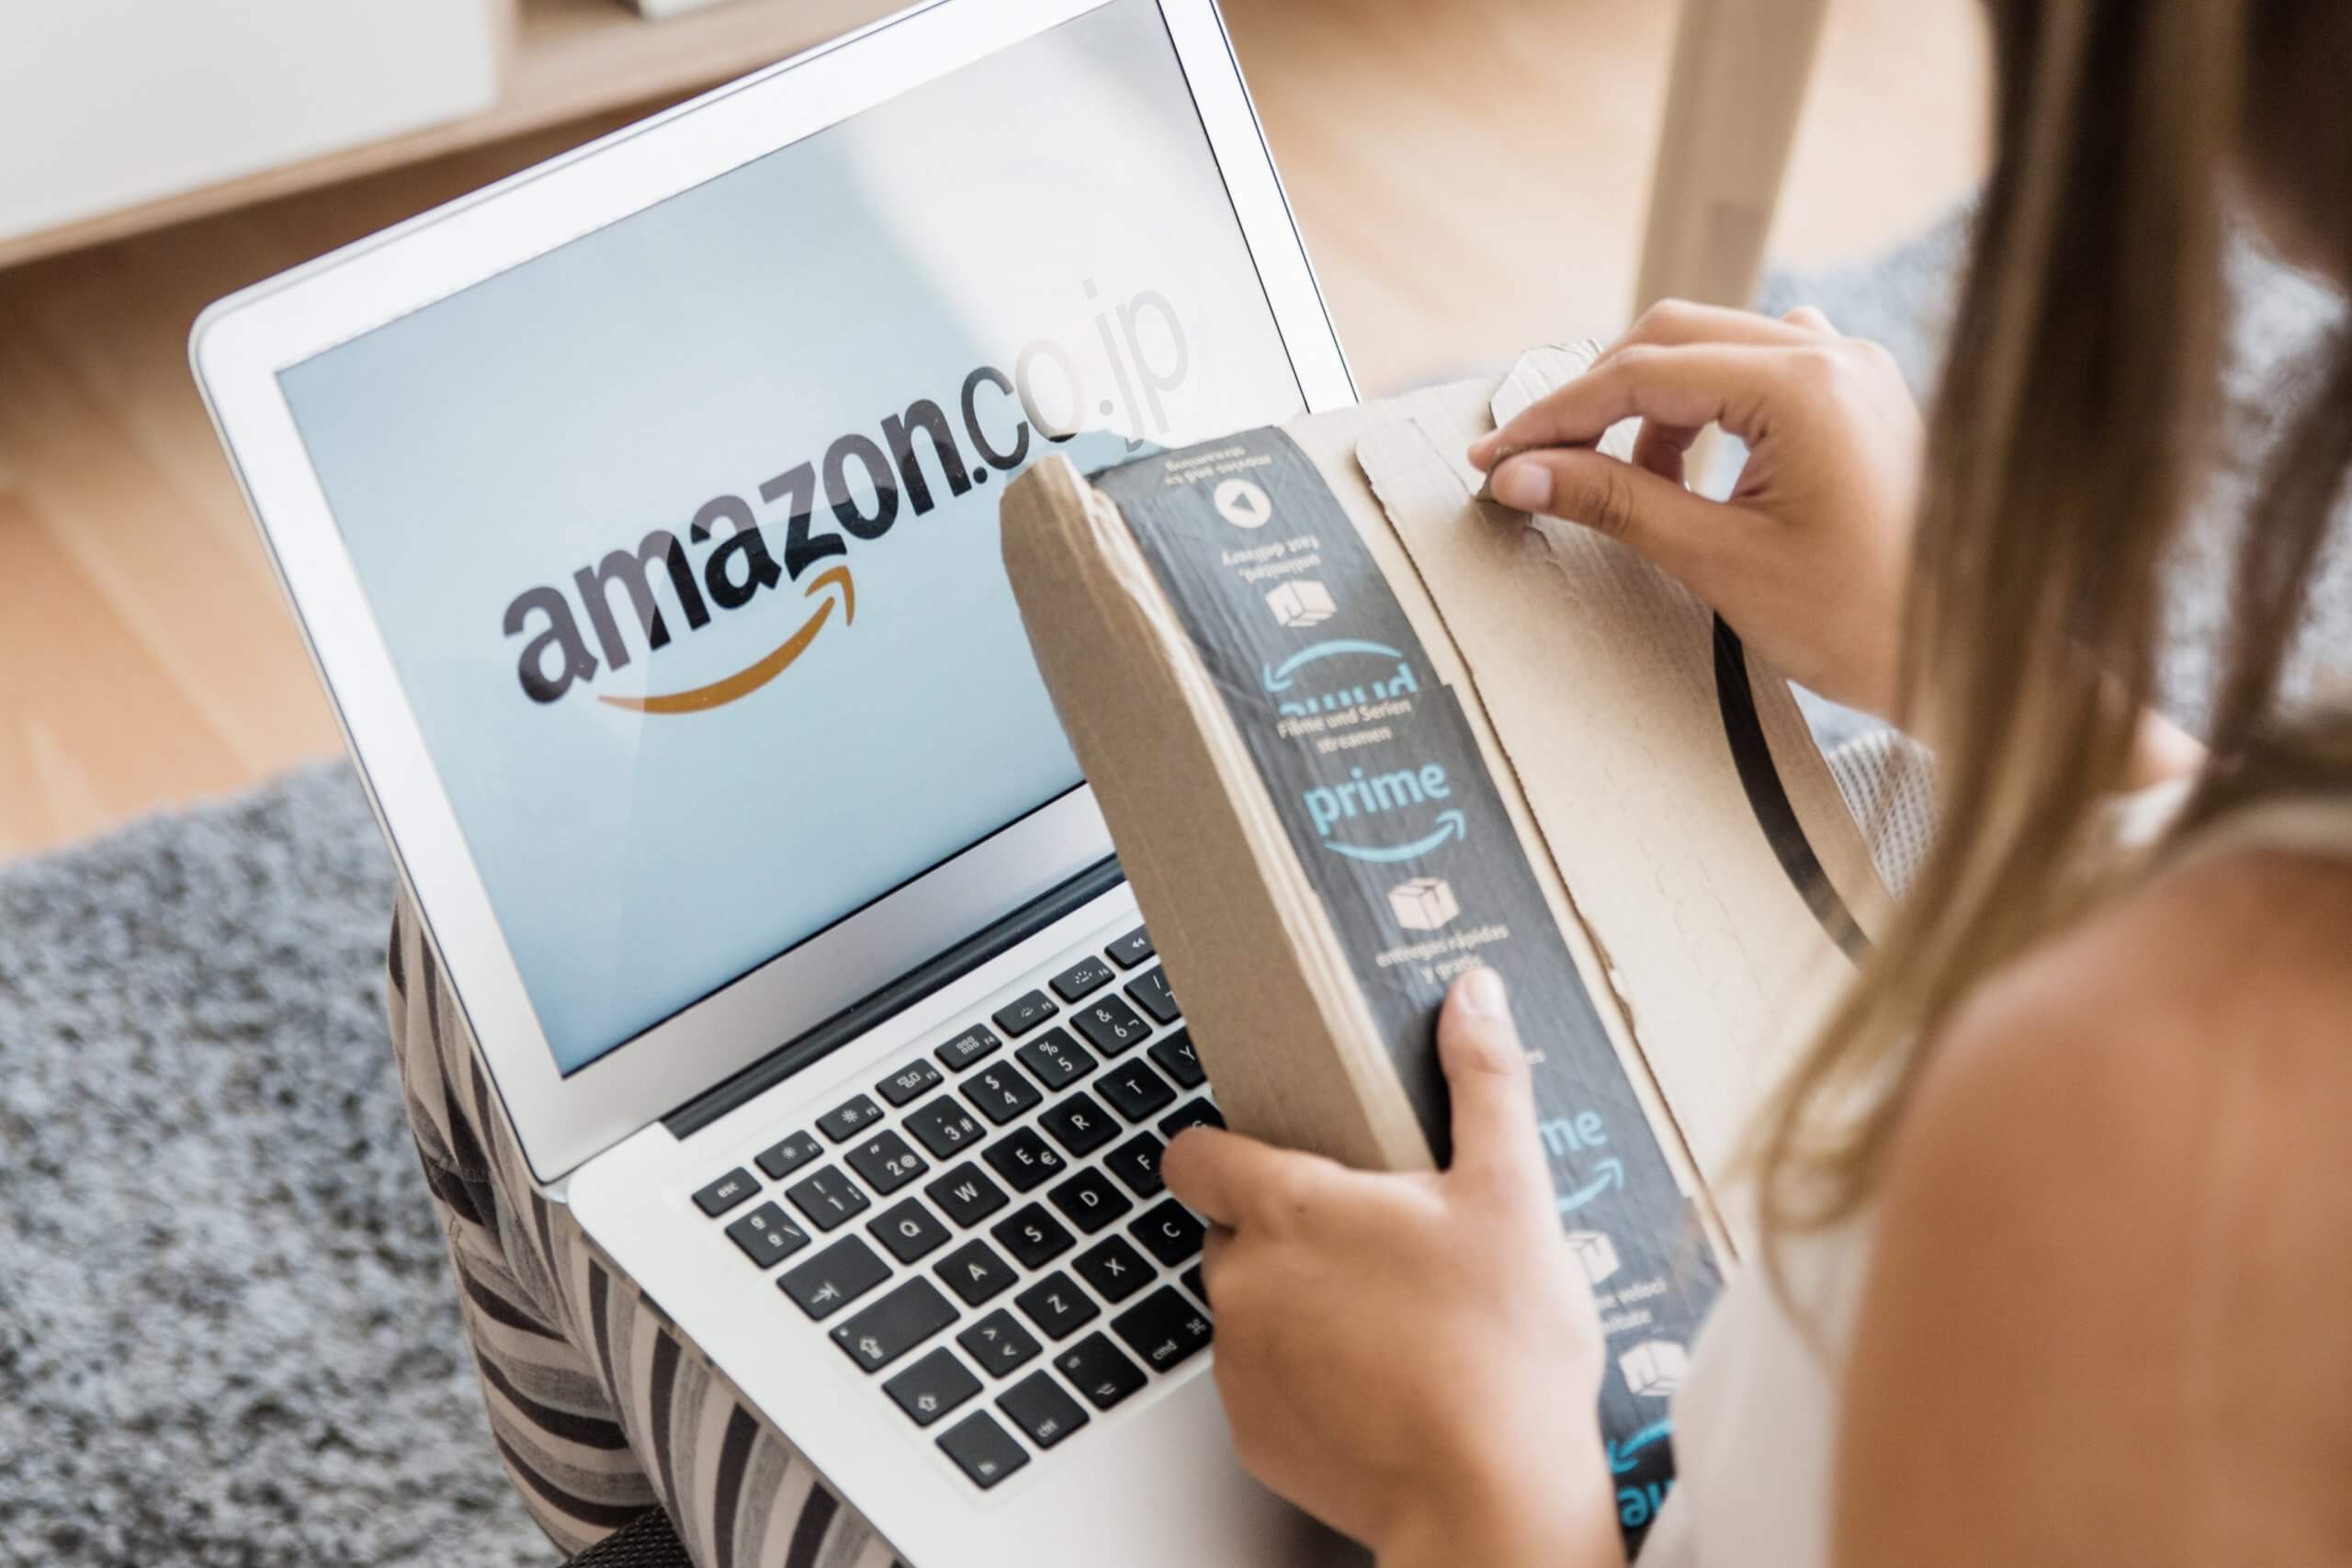 Available to work. Амазон электронная коммерция. The Amazon. E-Commerce site Amazon. Customers Amazon.